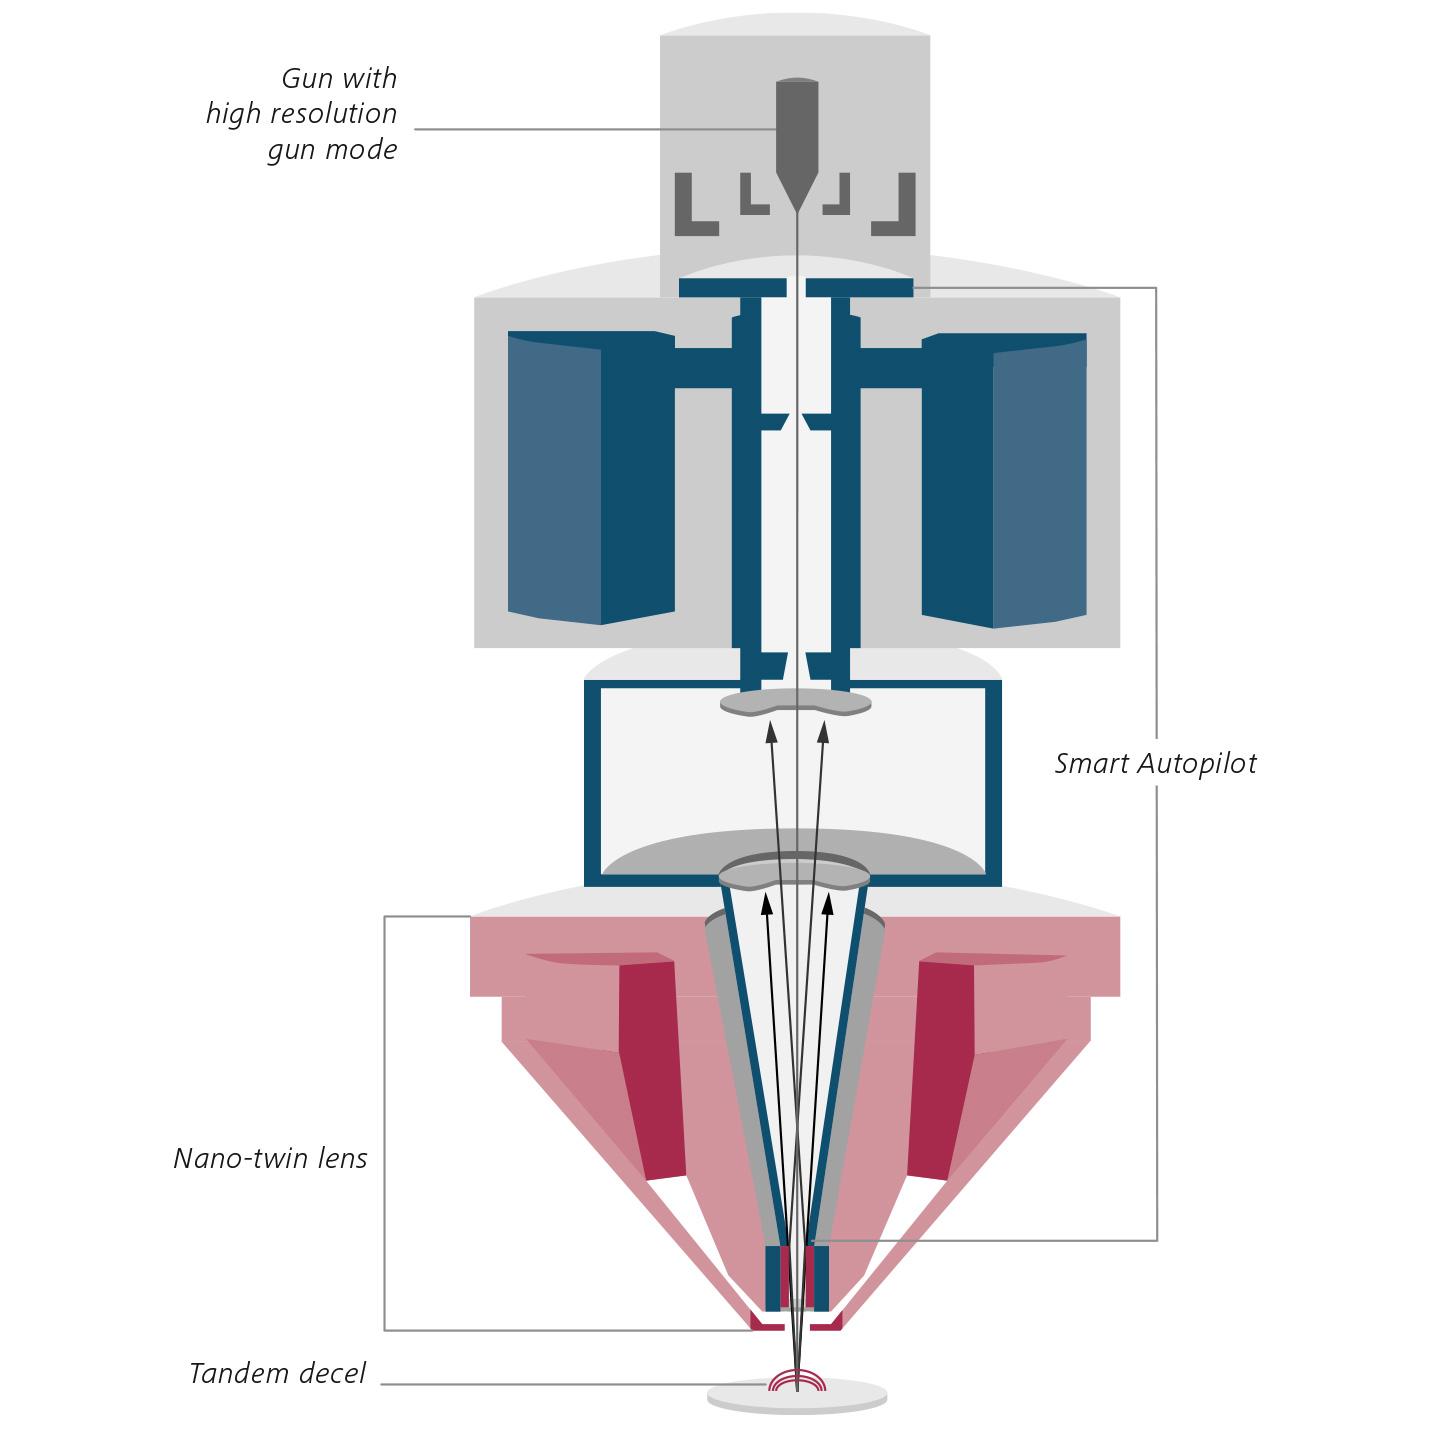 Conception optique novatrice de la colonne Gemini 3. Coupe transversale schématique de GeminiSEM 560. Lentille Nano-twin (rouge), Smart Autopilot (bleu).